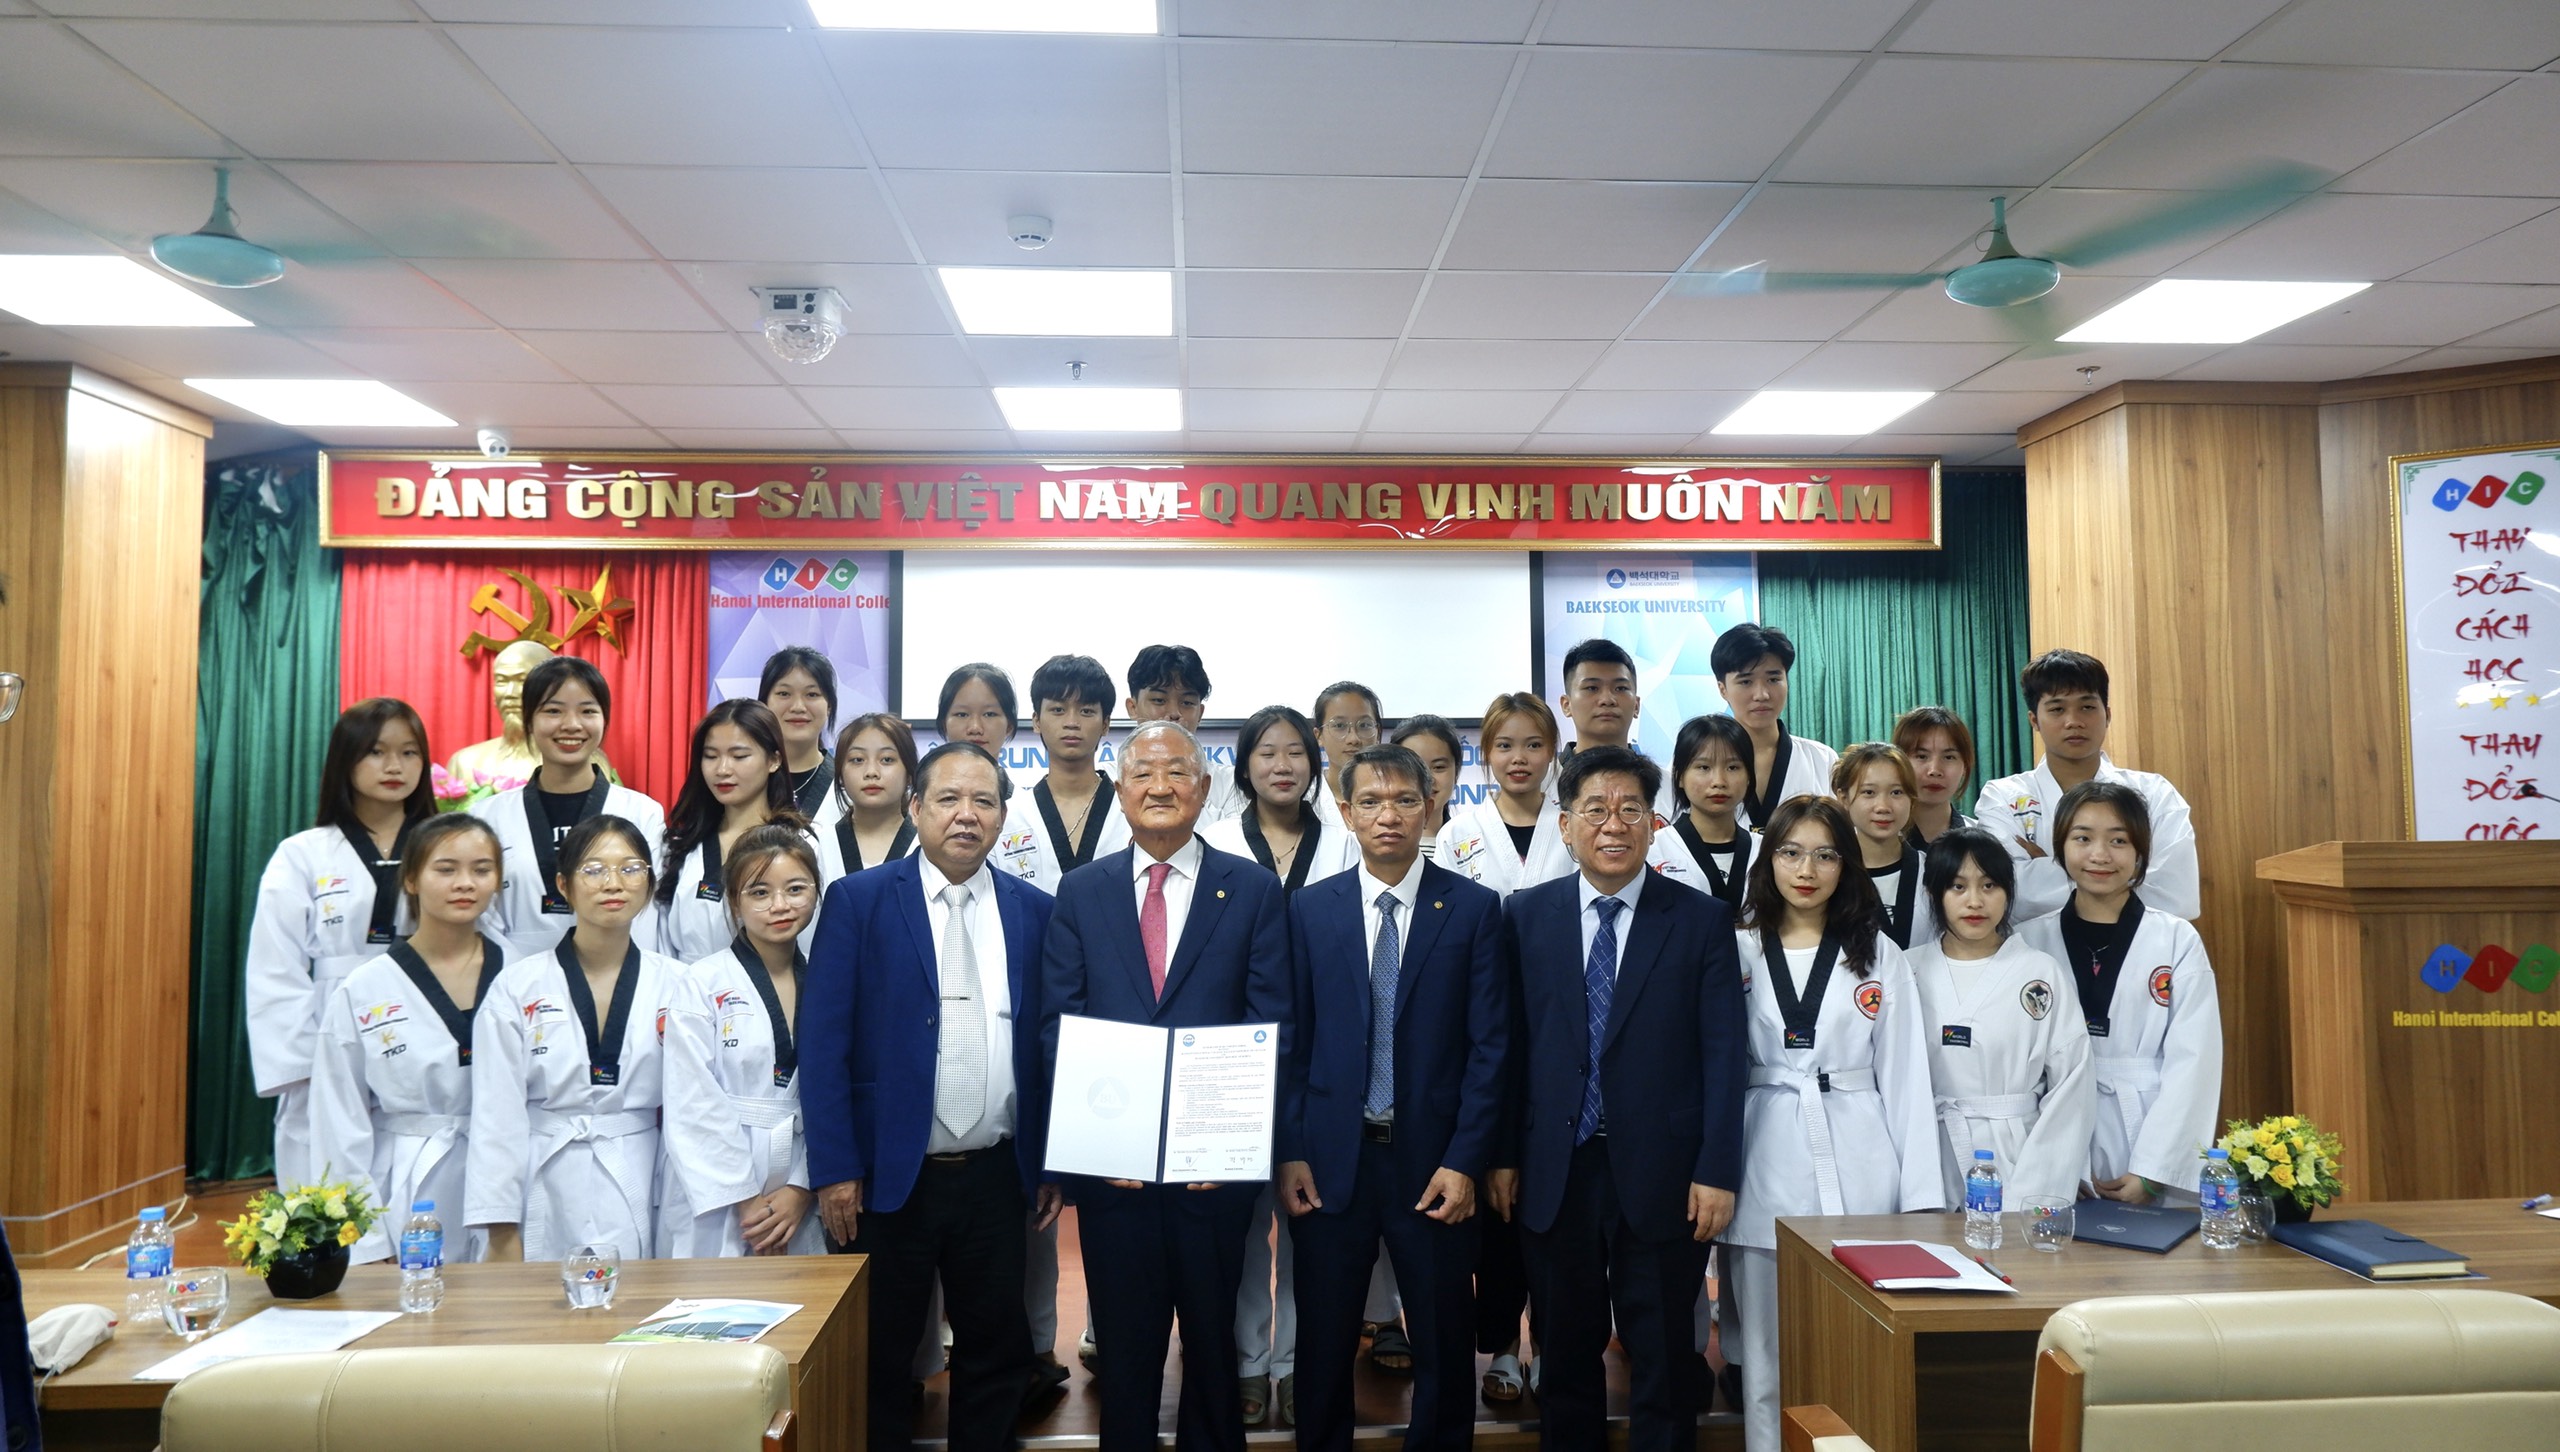 Ký kết hợp tác giáo dục về việc thành lập “Trung tâm giáo dục Taekwondo Hàn Quốc” tại HIC